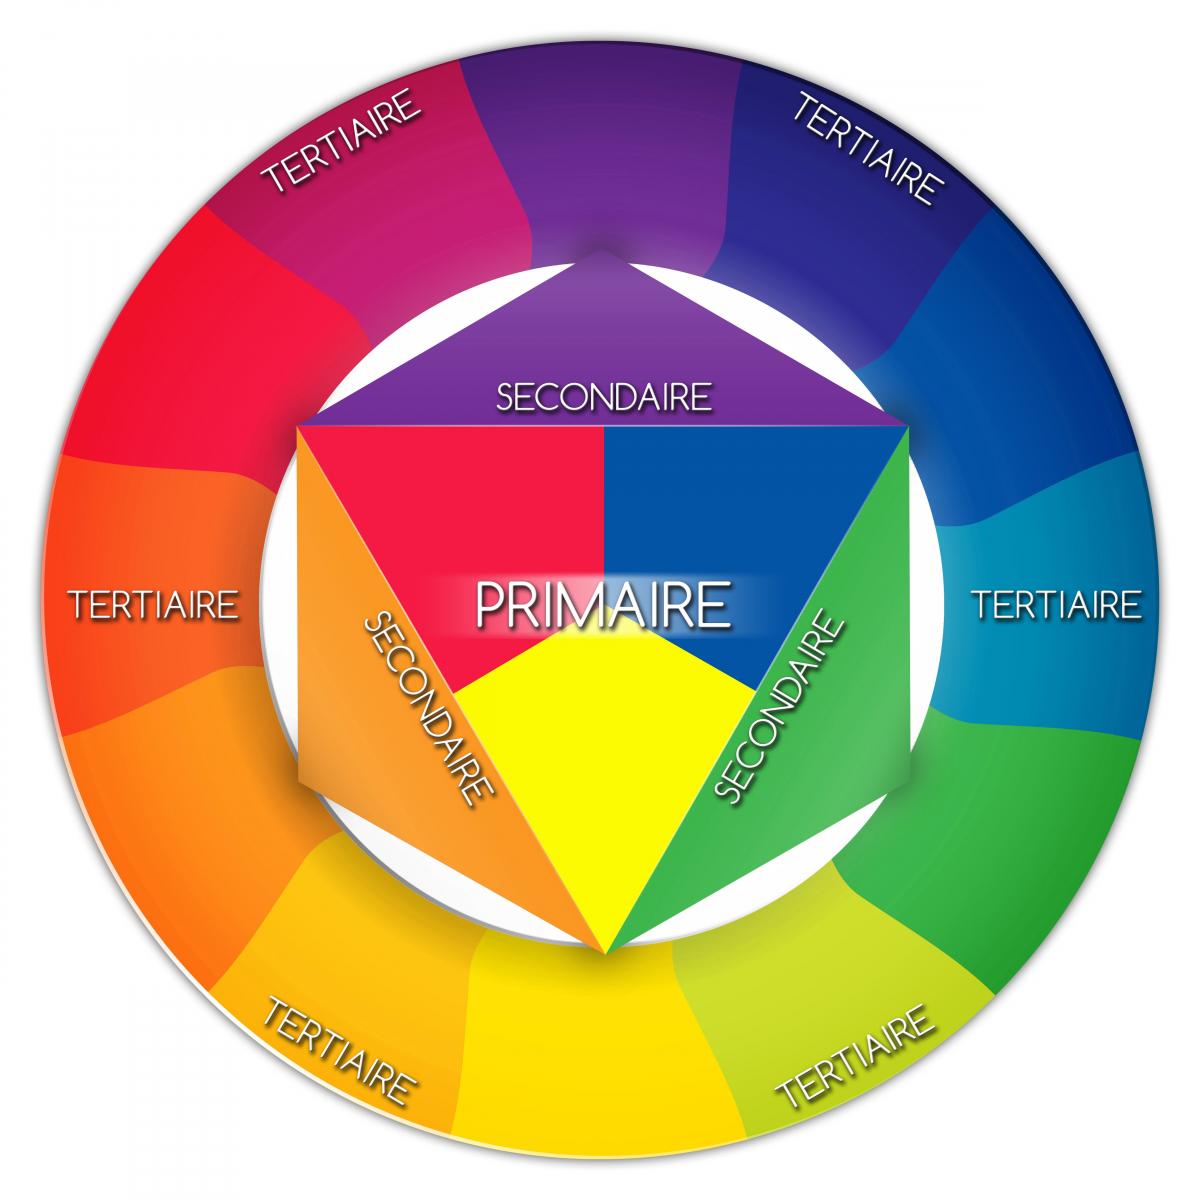 Cercle chromatique : définition et utilisation